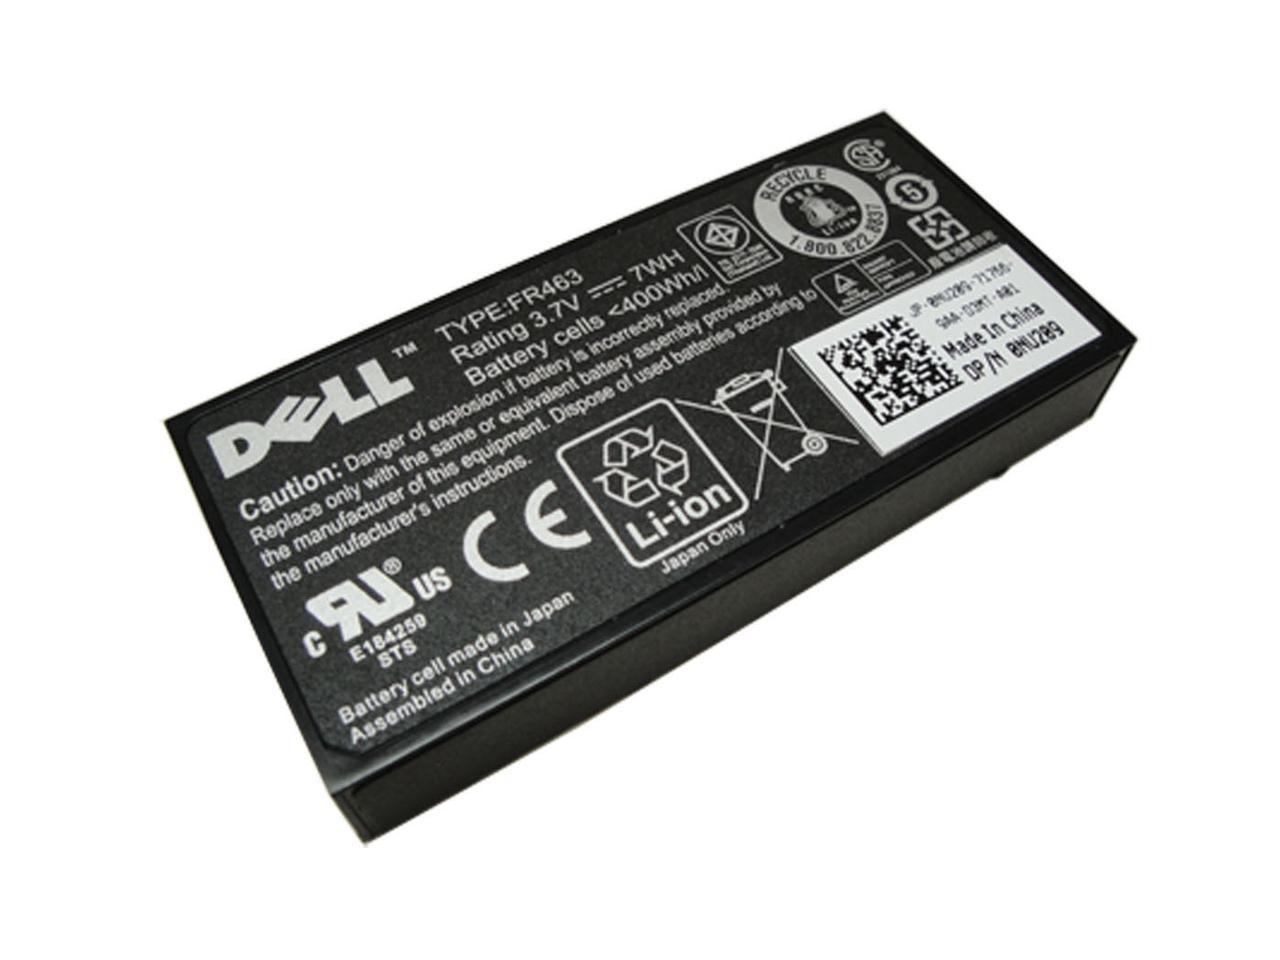 Dell FR463 New Battery Server PowerEdge PERC 5i 6i NU209 P9110 U8735 NU209 P9110 U8735 0FR463 